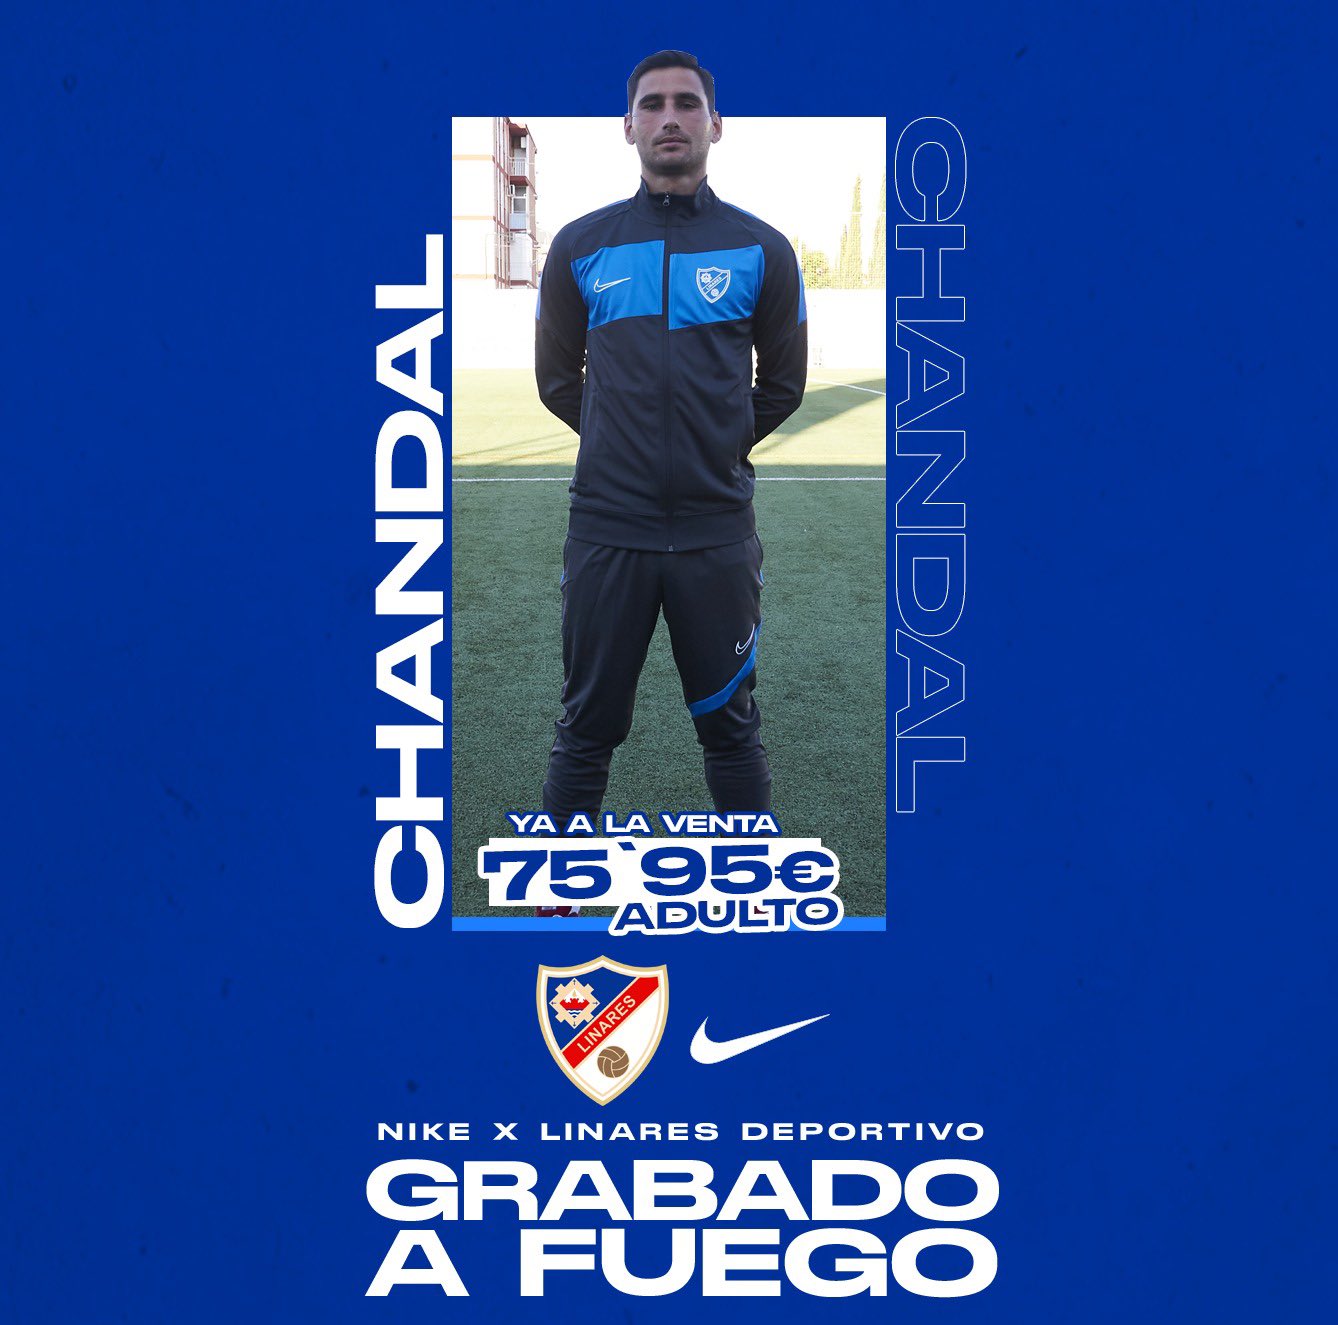 Linares Deportivo 💙⚒ på "🔵 🅨🅐 🅐 🅛🅐 🅥🅔🅝🅣🅐 puedes adquirir nuestro 𝐏𝐨𝐥𝐨 𝐝𝐞 𝐩𝐚𝐬𝐞𝐨 y el 𝐂𝐡𝐚́𝐧𝐝𝐚𝐥 oficial de la Temporada 2021/2022! 🙌🏼 👉 ¡Disponibles en Pasaje FAS, 10